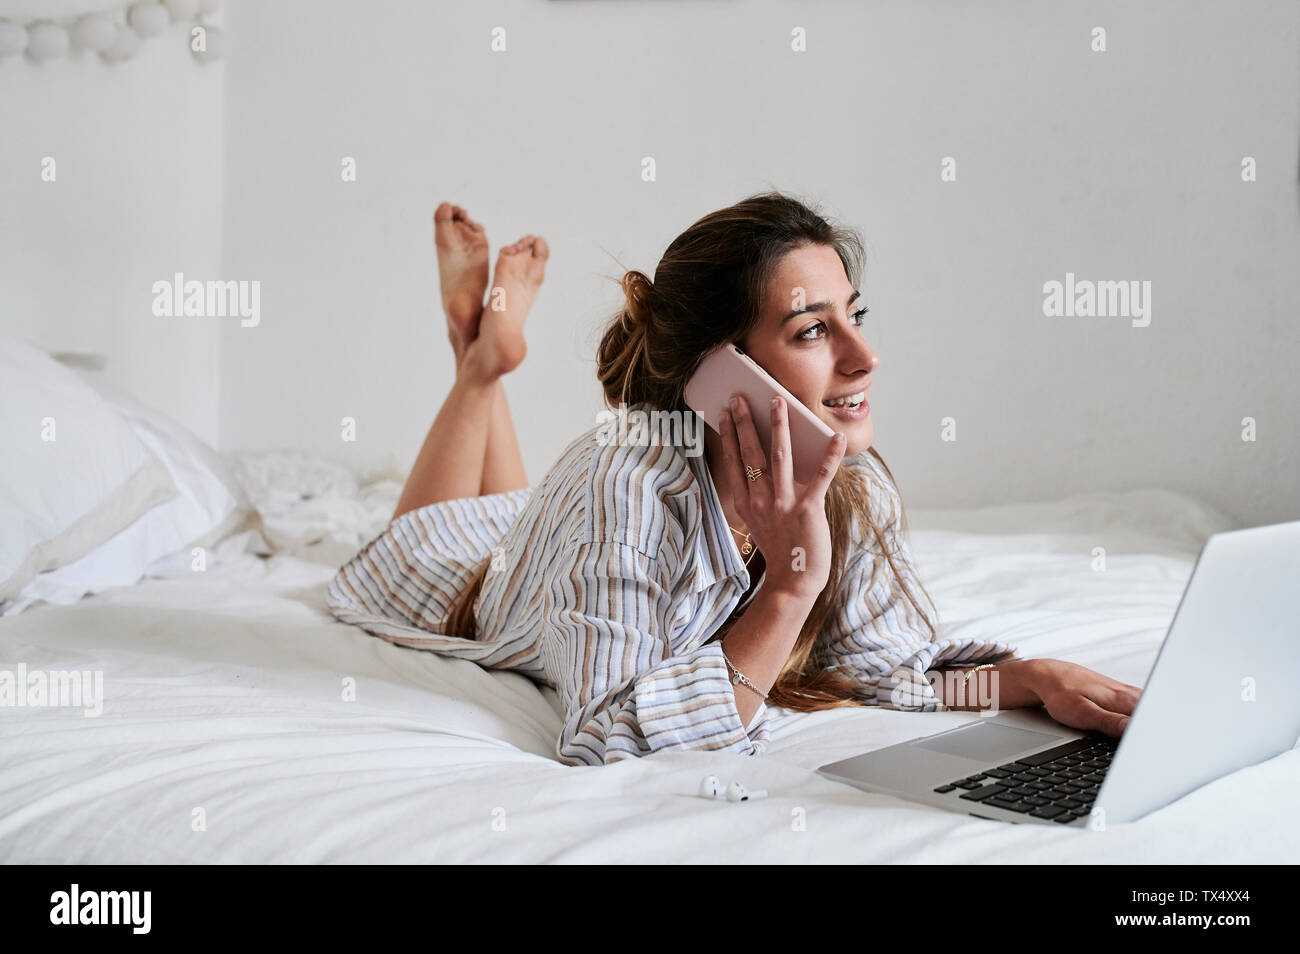 Junge Frau im Bett liegt, mit Laptop, Telefonieren Stockfoto